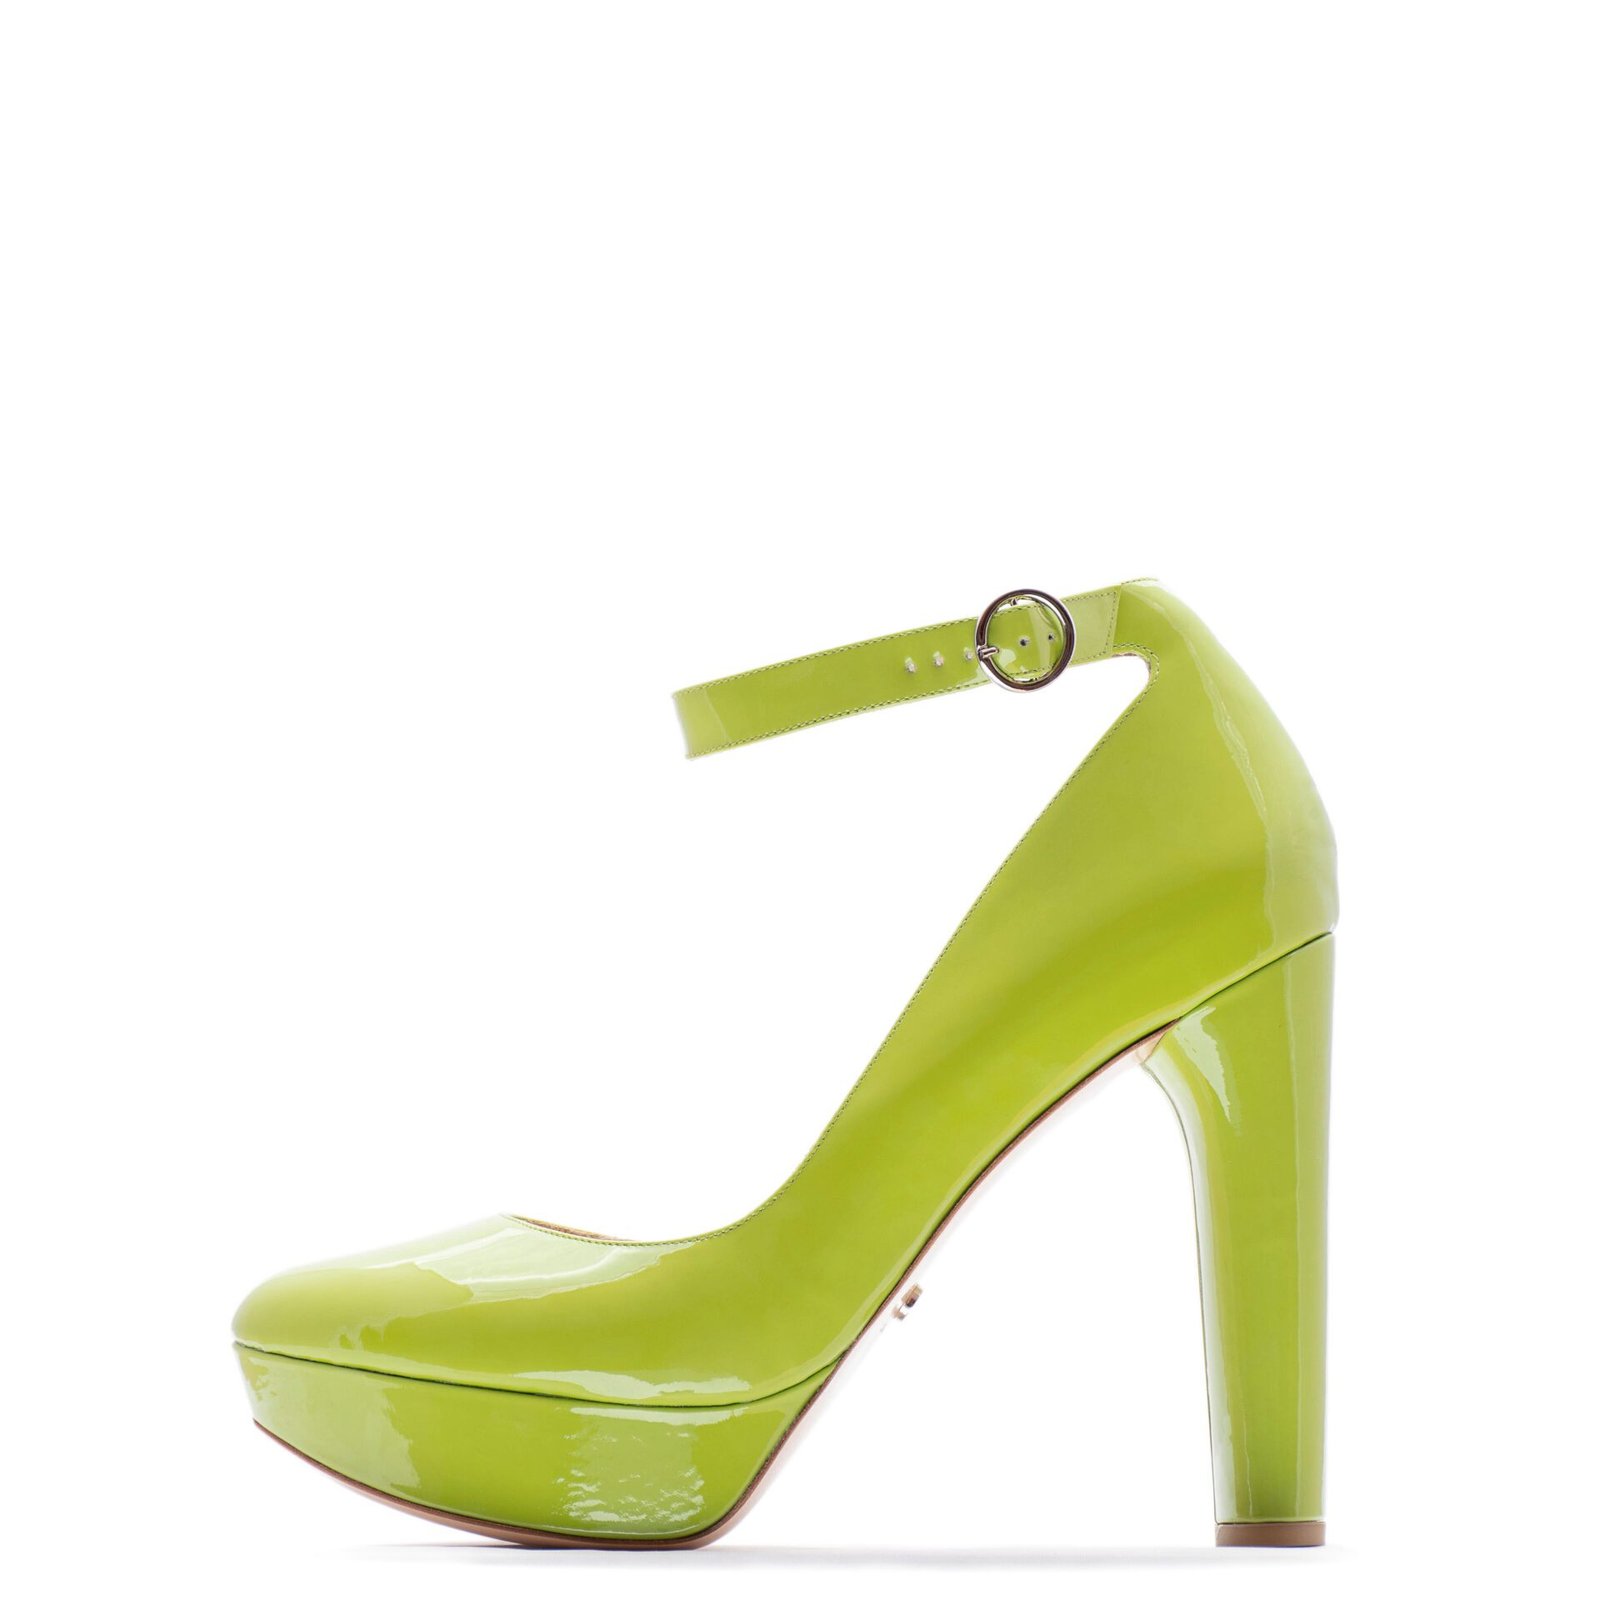 Green Platform heels fir bridesmaids